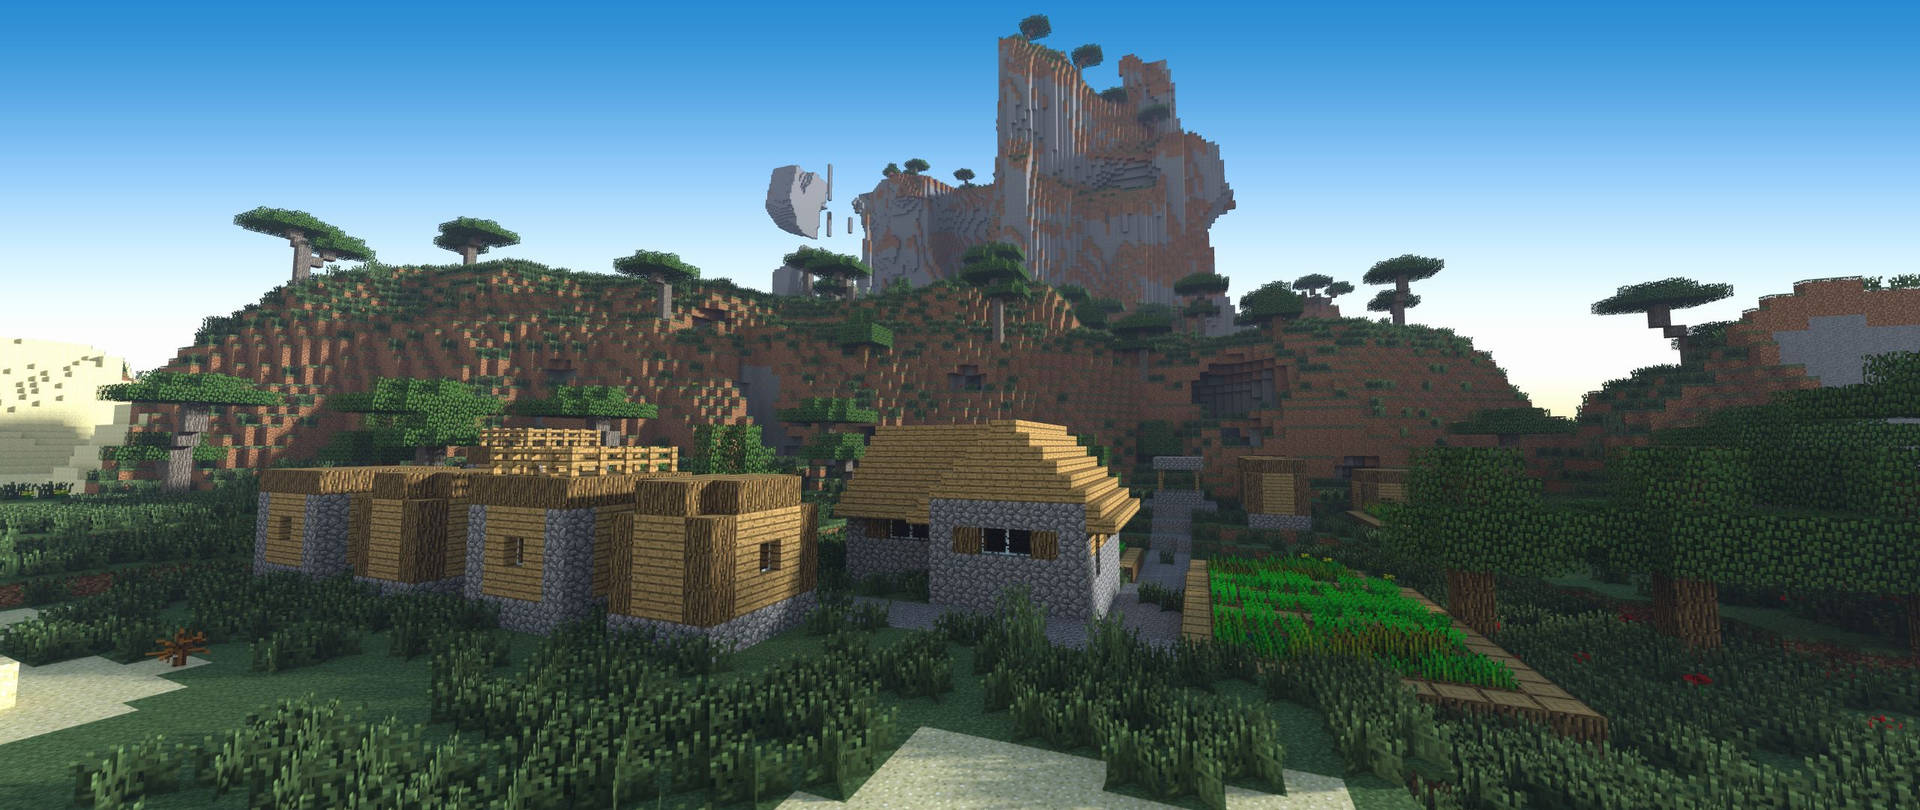 Minecraft Landscape Village Houses Picture